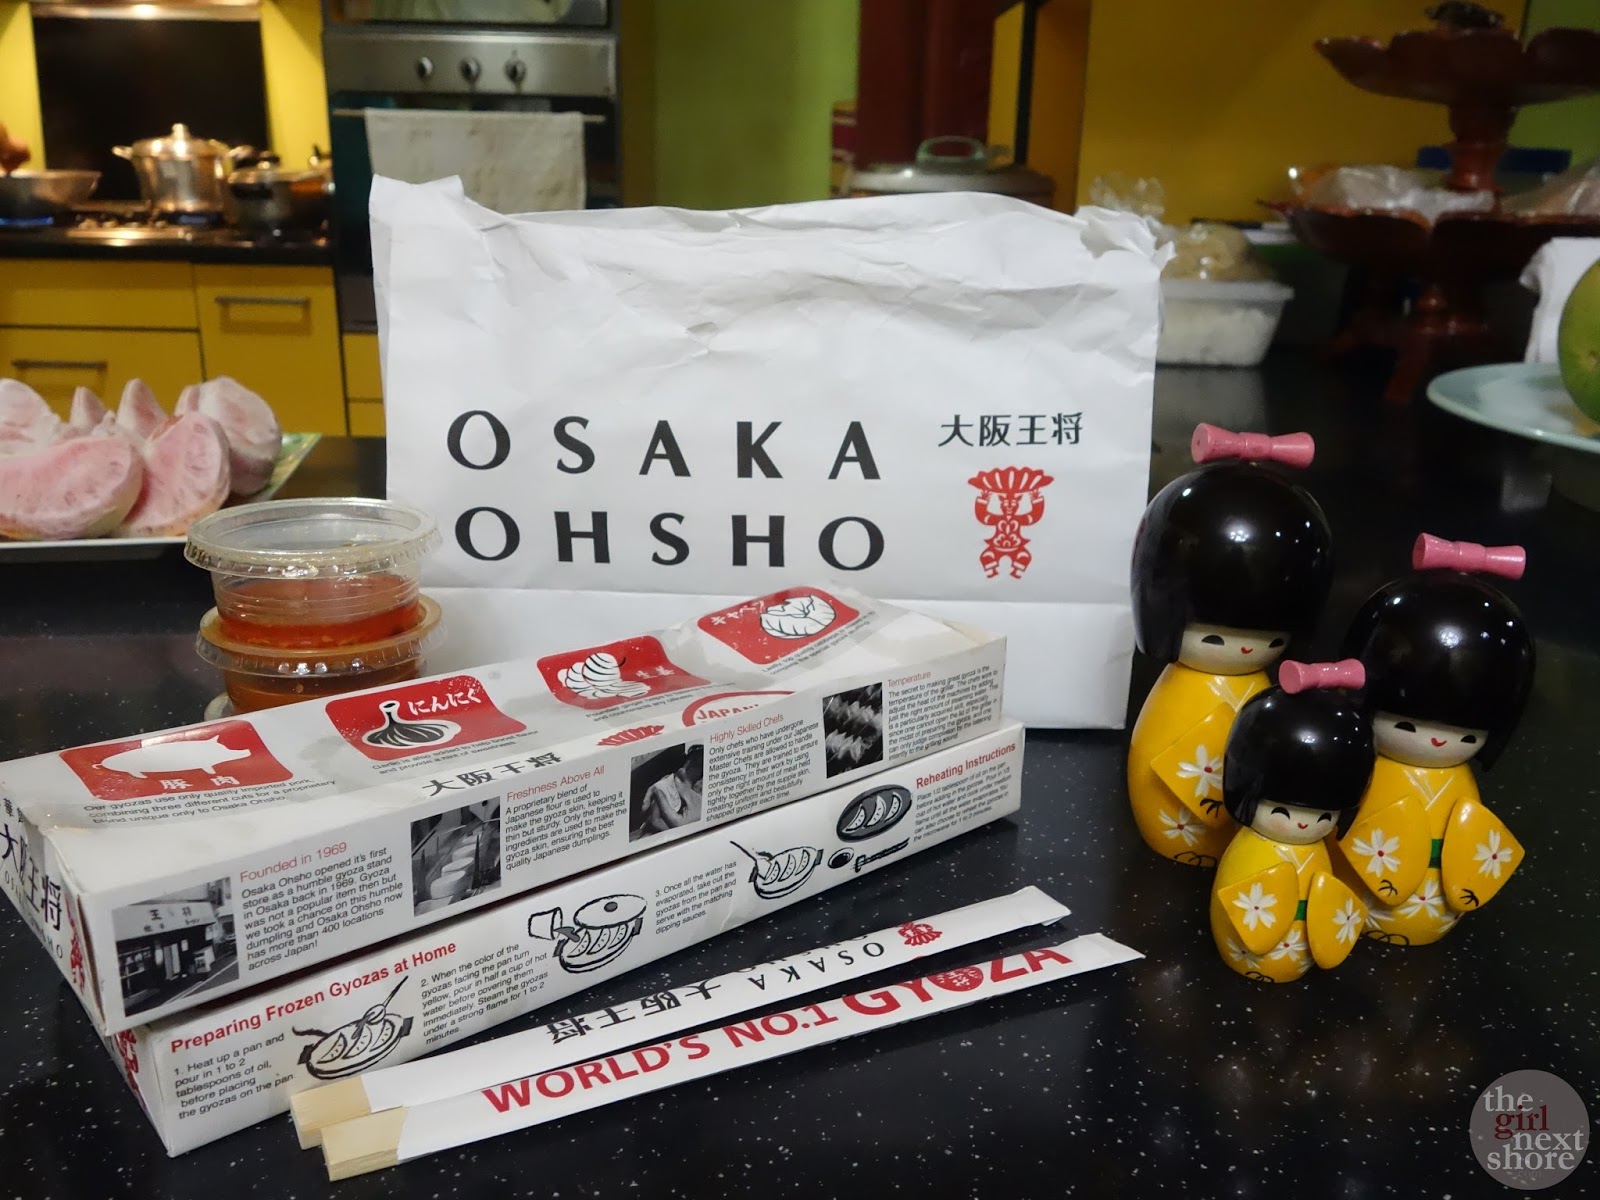 Osaka Ohsho Manila